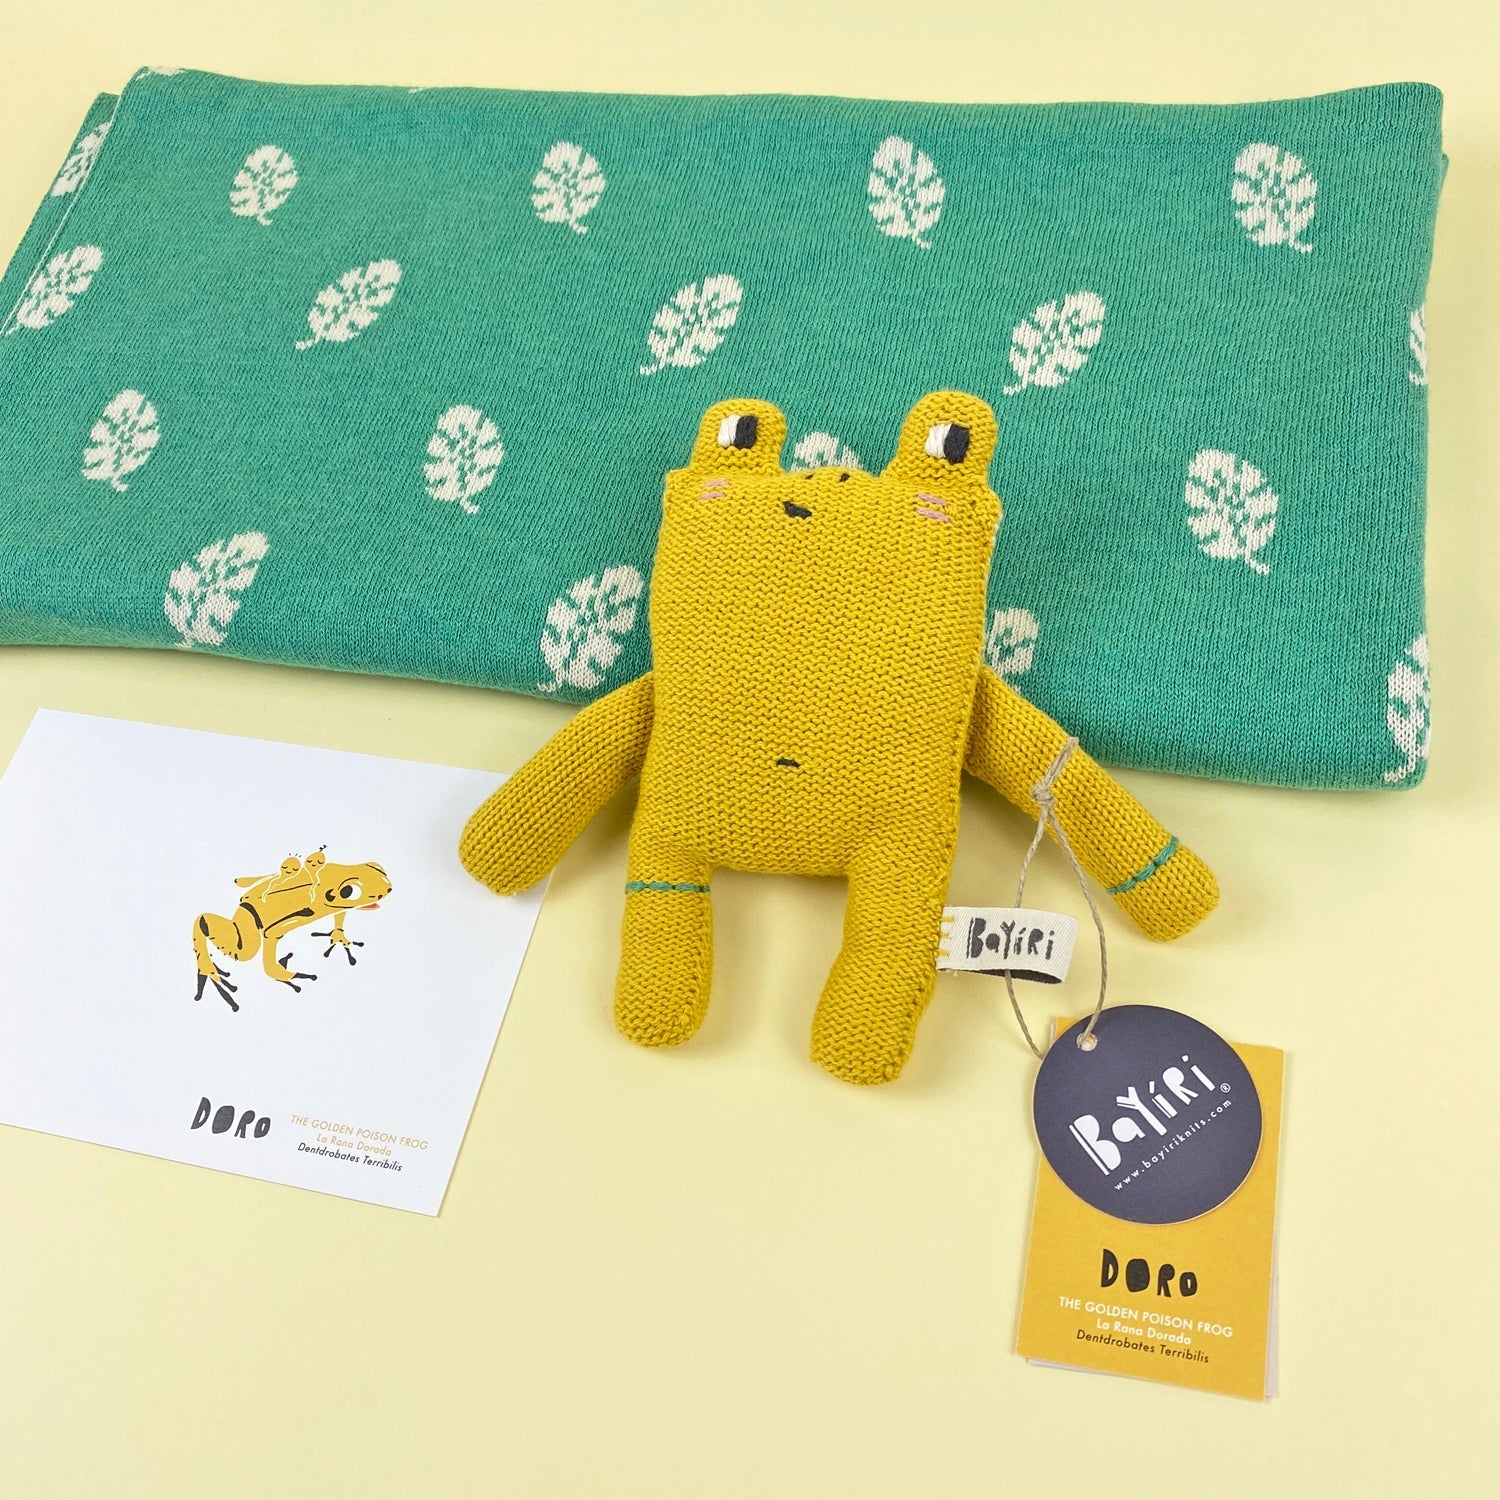 Doro & Blanket Set Gift Sets Bayíri Doro & Hojas Blanket 